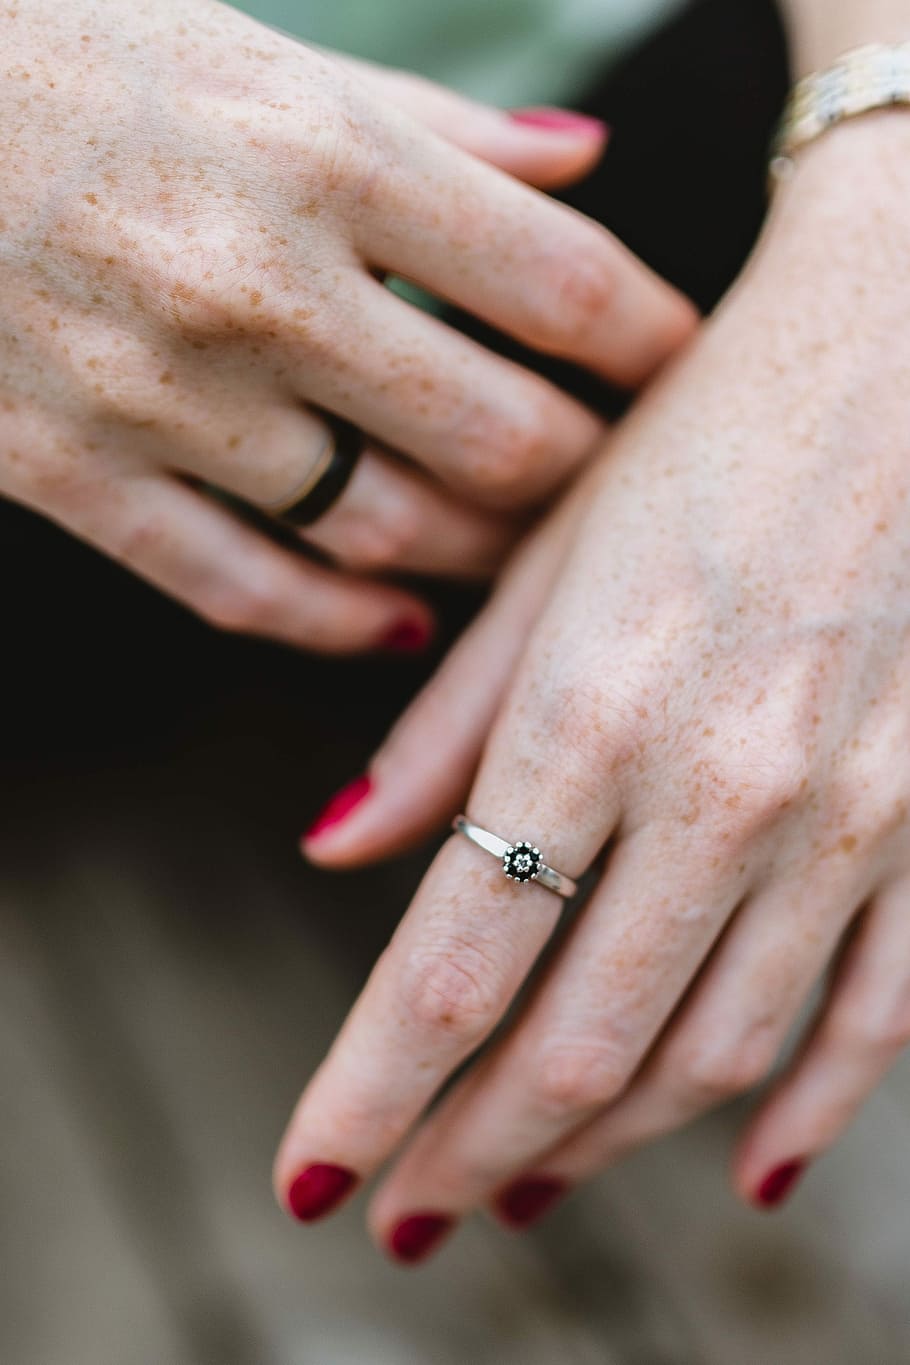 женщина, руки, ювелирные изделия, деталь, женский пол, кольцо, веснушки, красные ногти, маникюр, человеческая рука